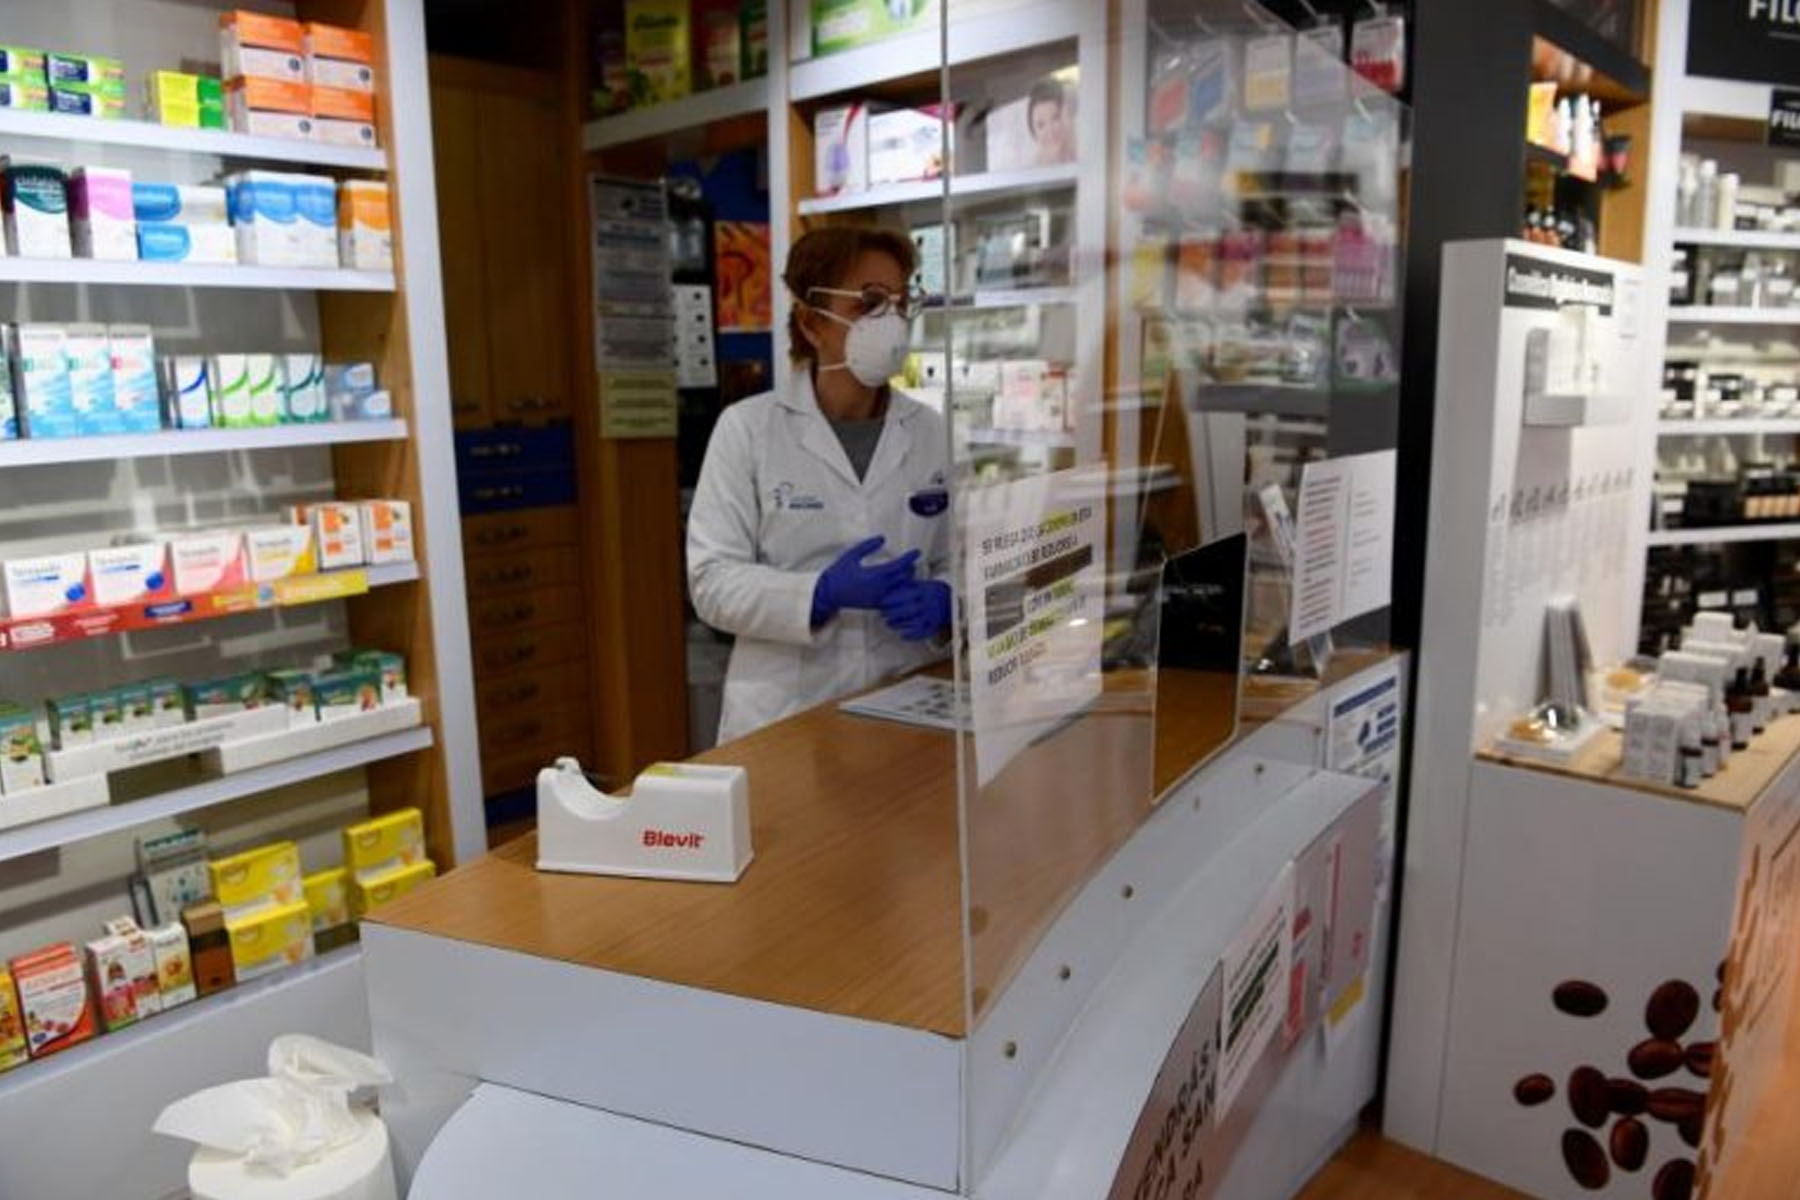 Las farmacias pasarían a vender autotesteos para COVID-19 la próxima semana en Argentina (Foto: Andina)